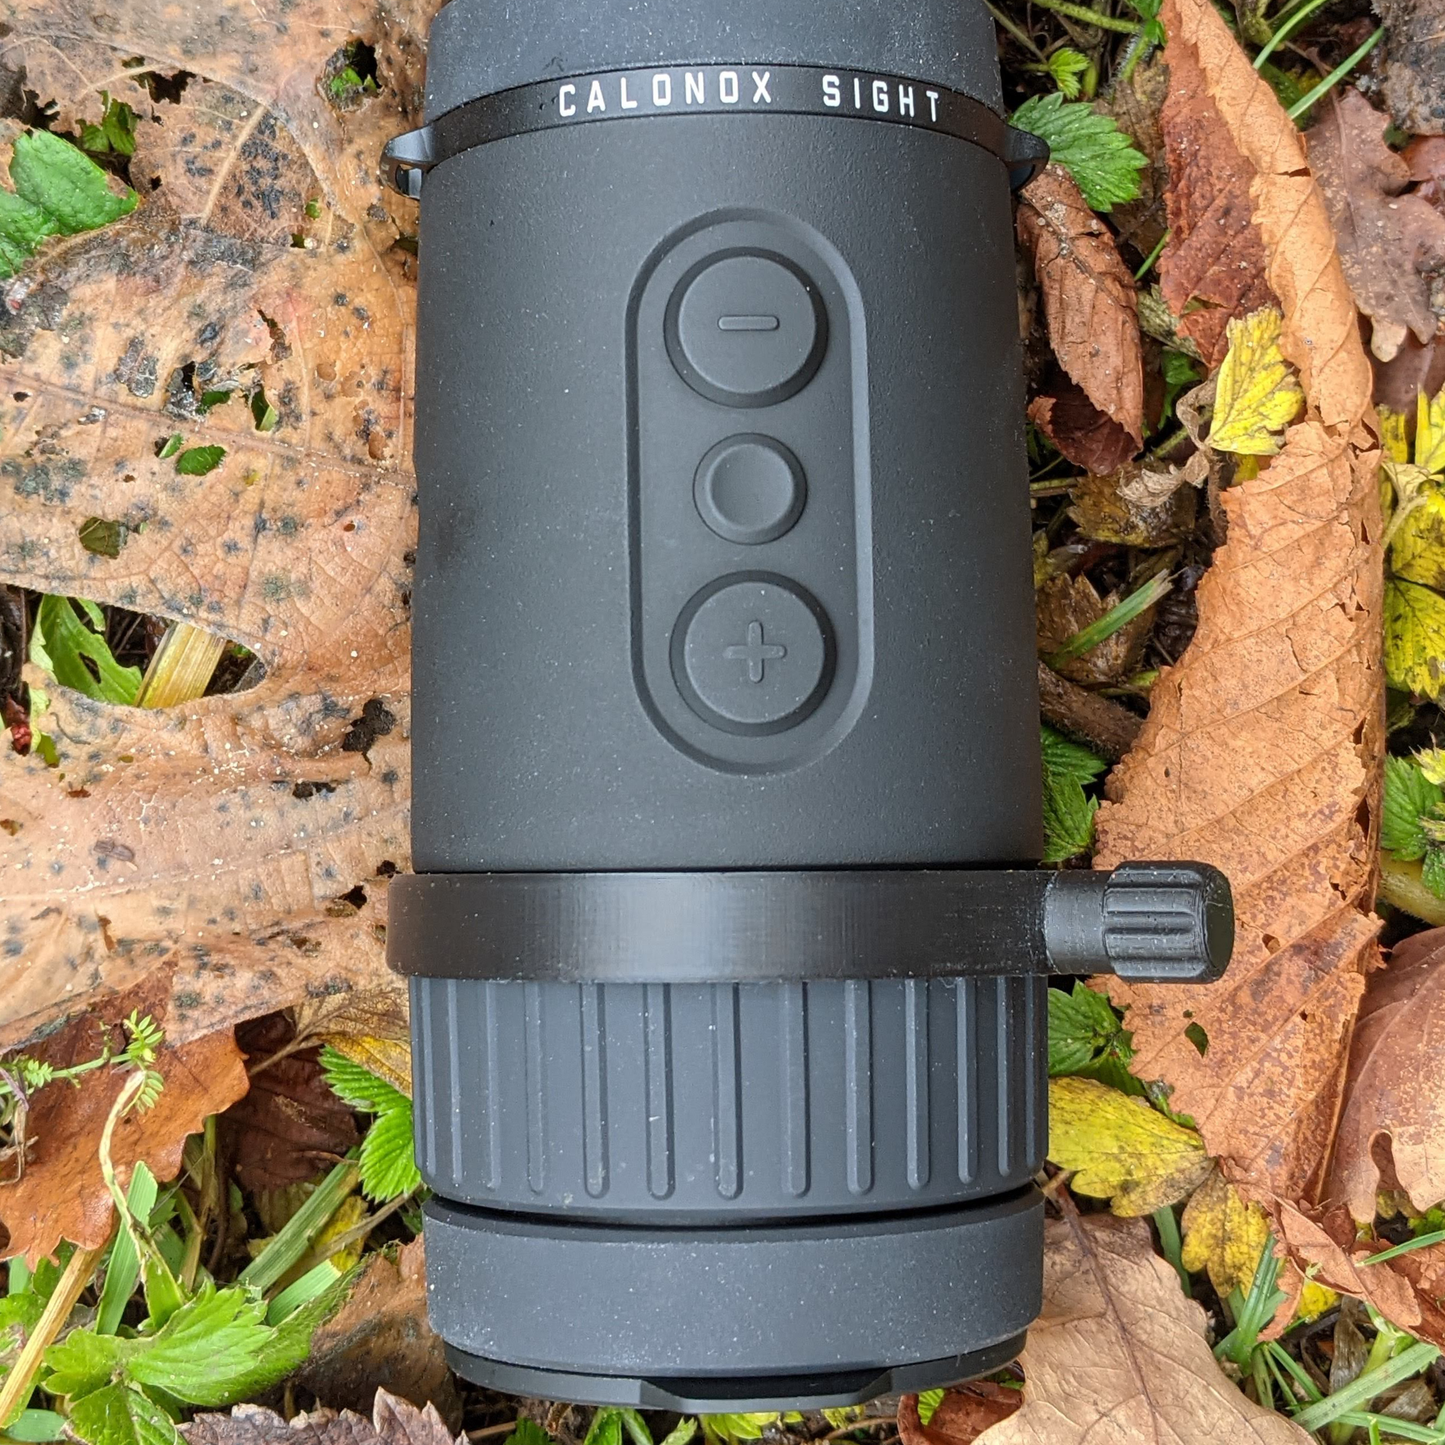 Zubehör für Vorsatzgeräte: Schnellverstellhebel für den Fokus der Leica Calonox Wärmebildvorsatzgeräte - Nachtschwarz.